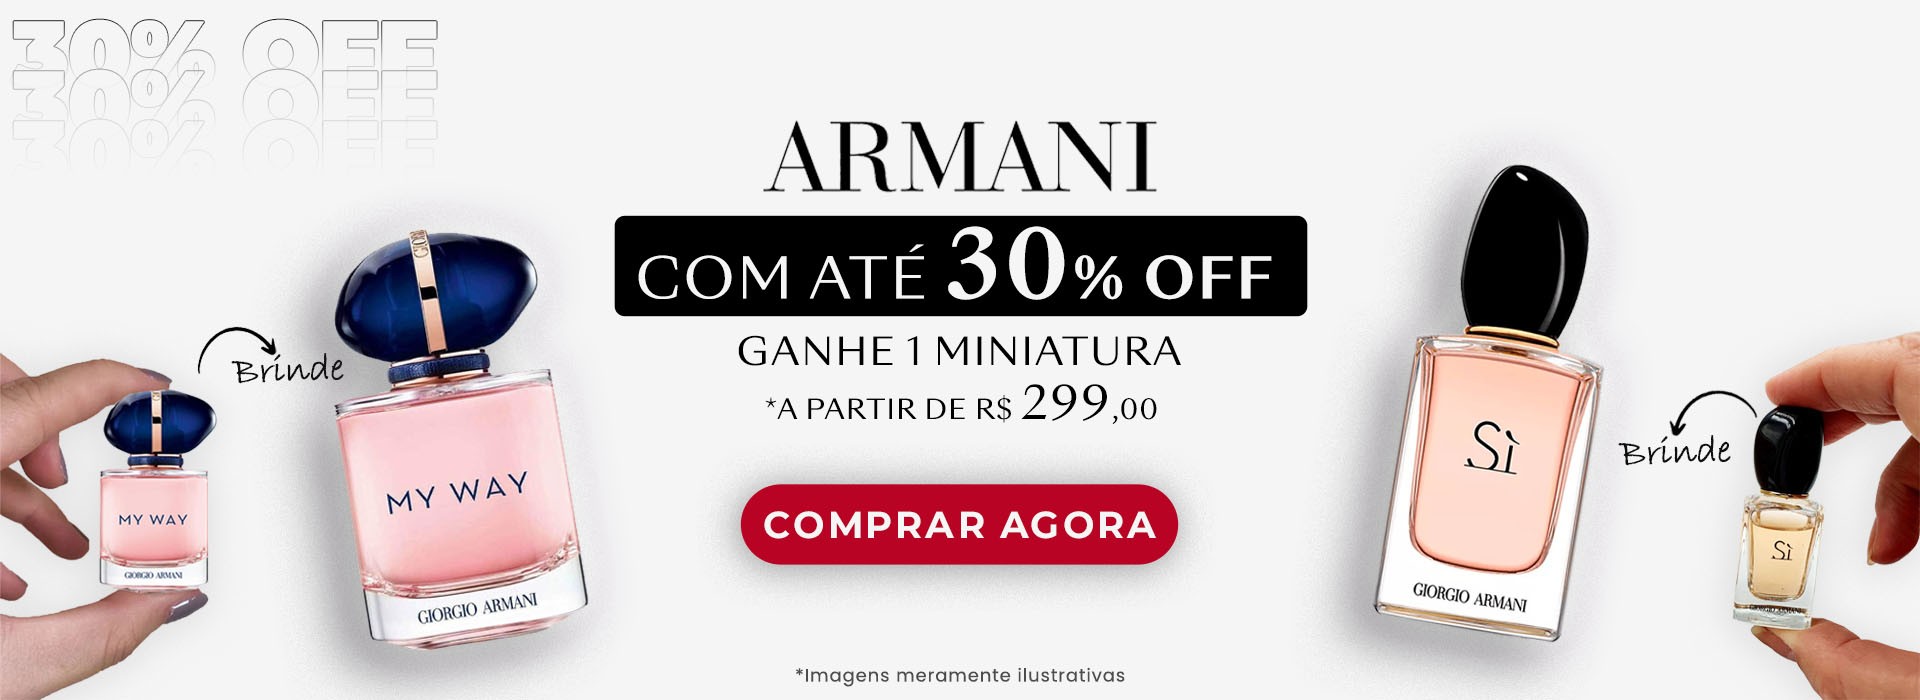 slide Armani 30%off